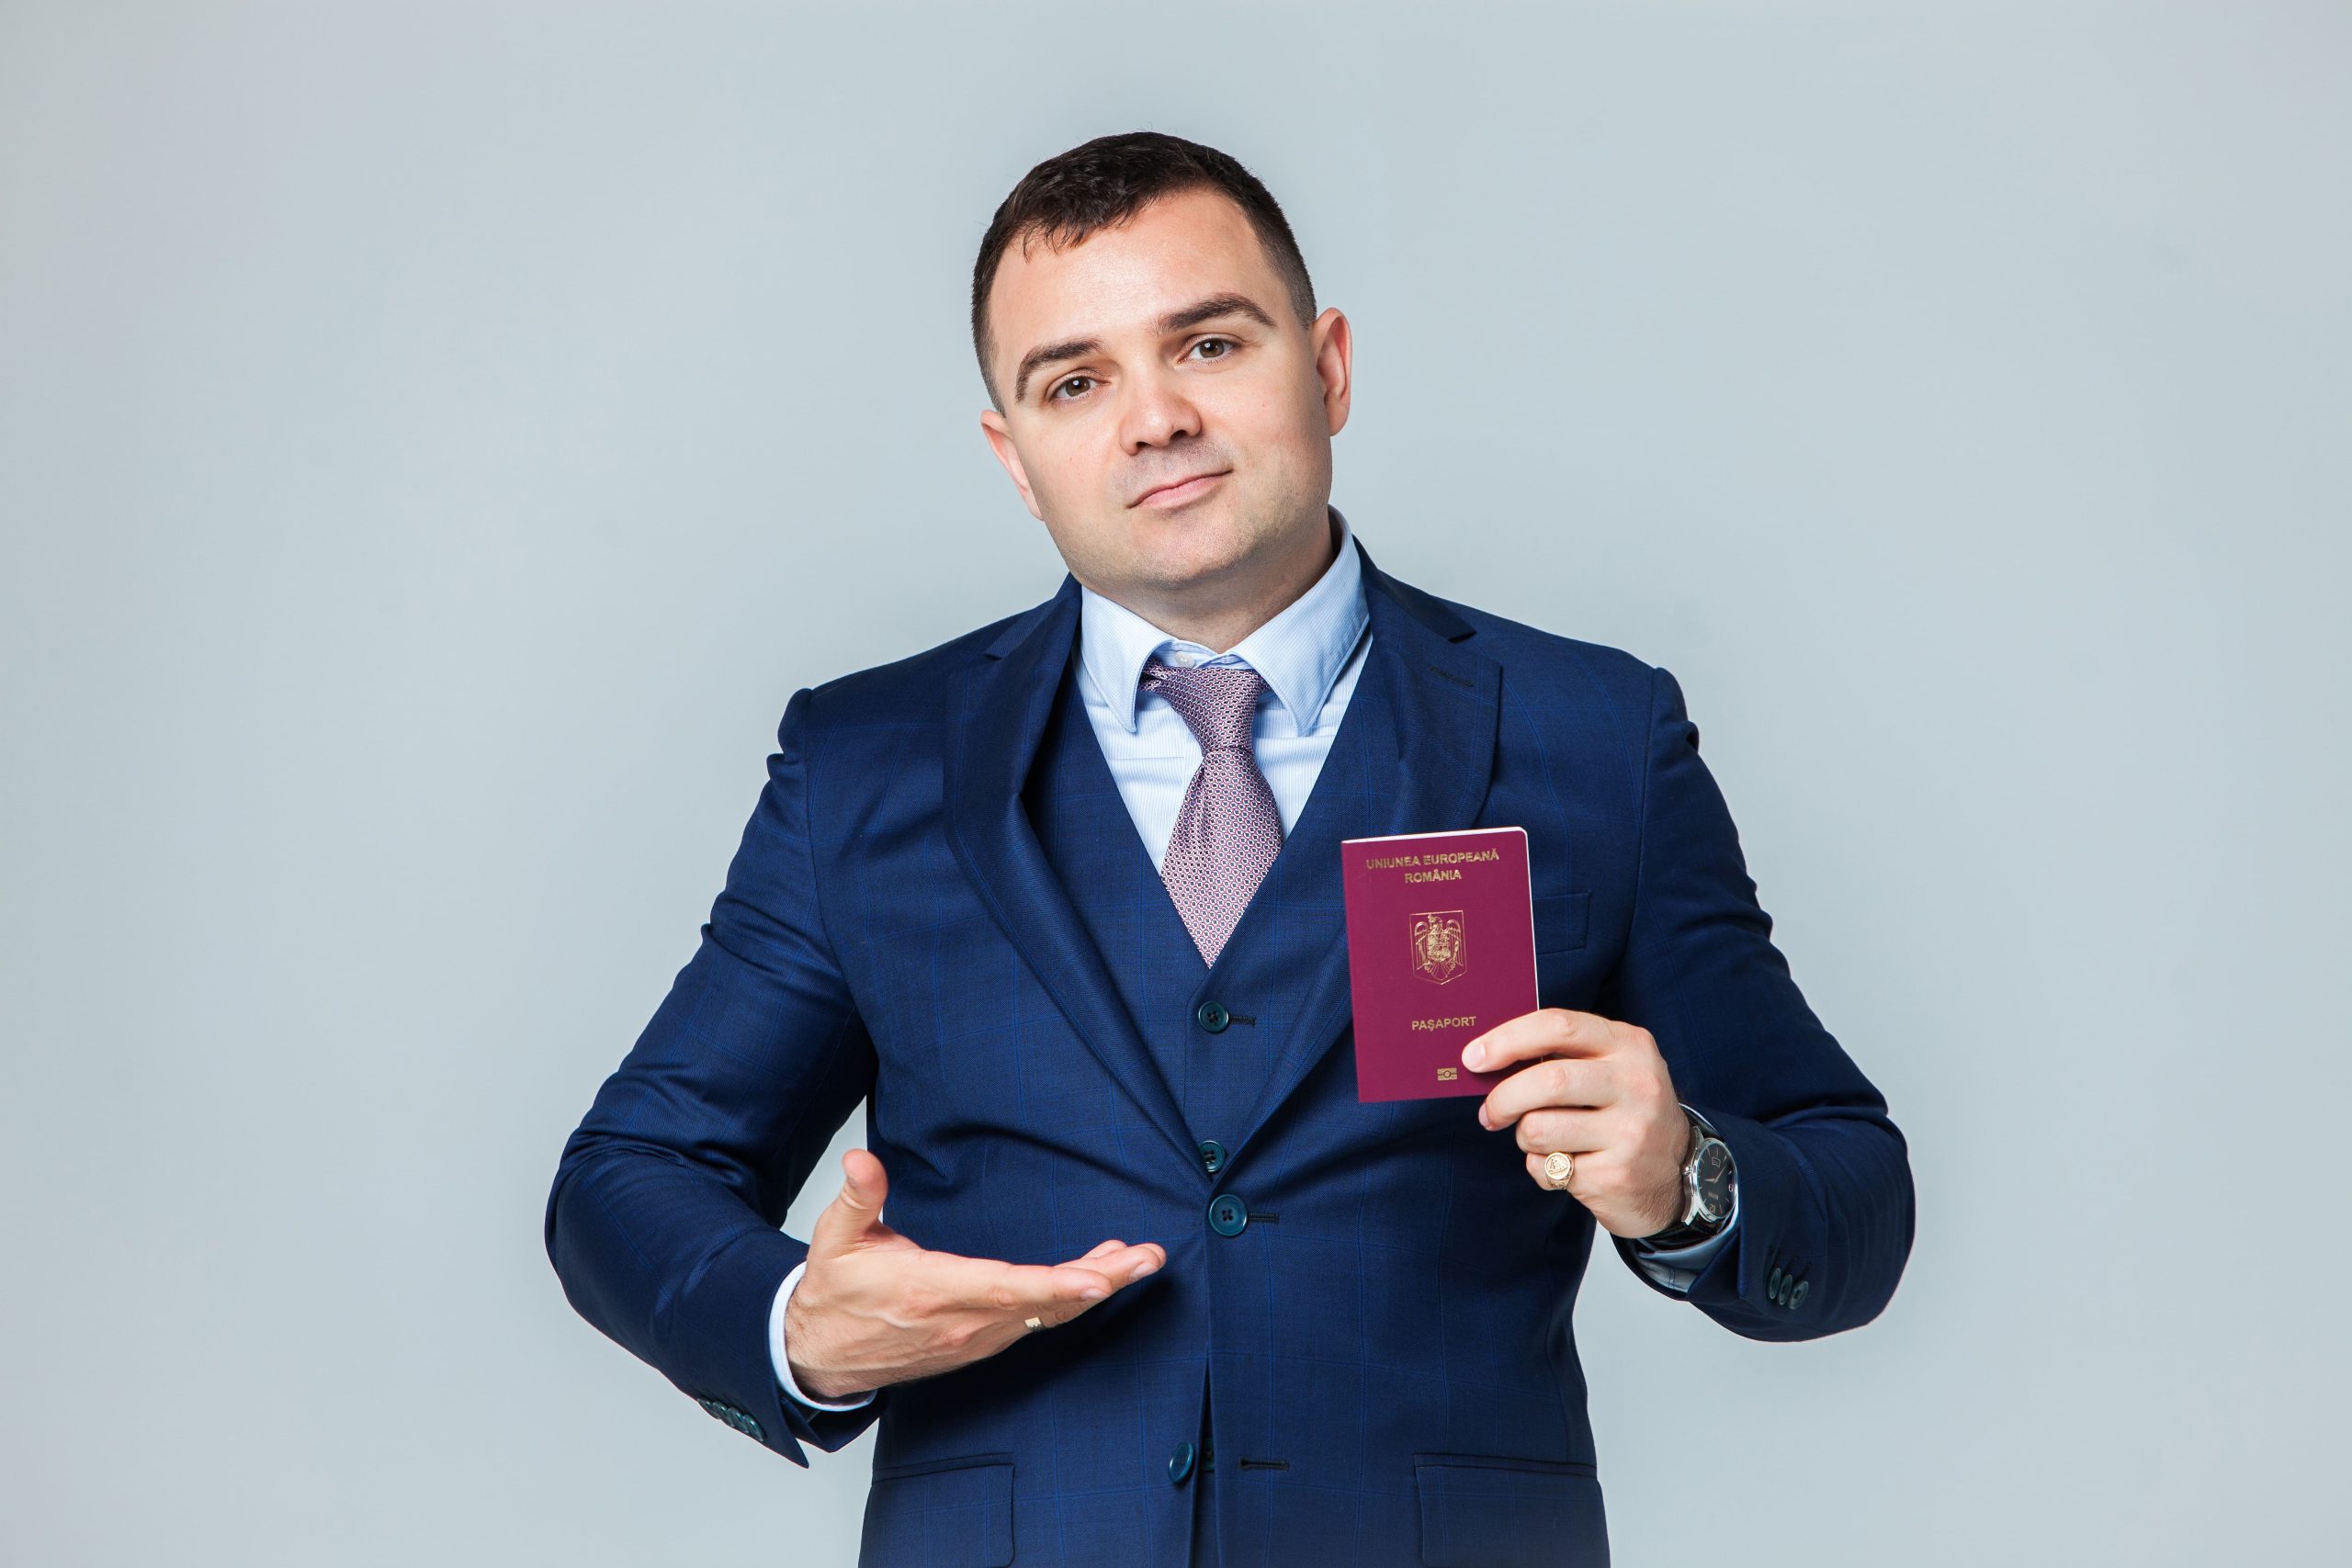 Cetățenia română și pașaport românesc – care este diferența dintre ele?